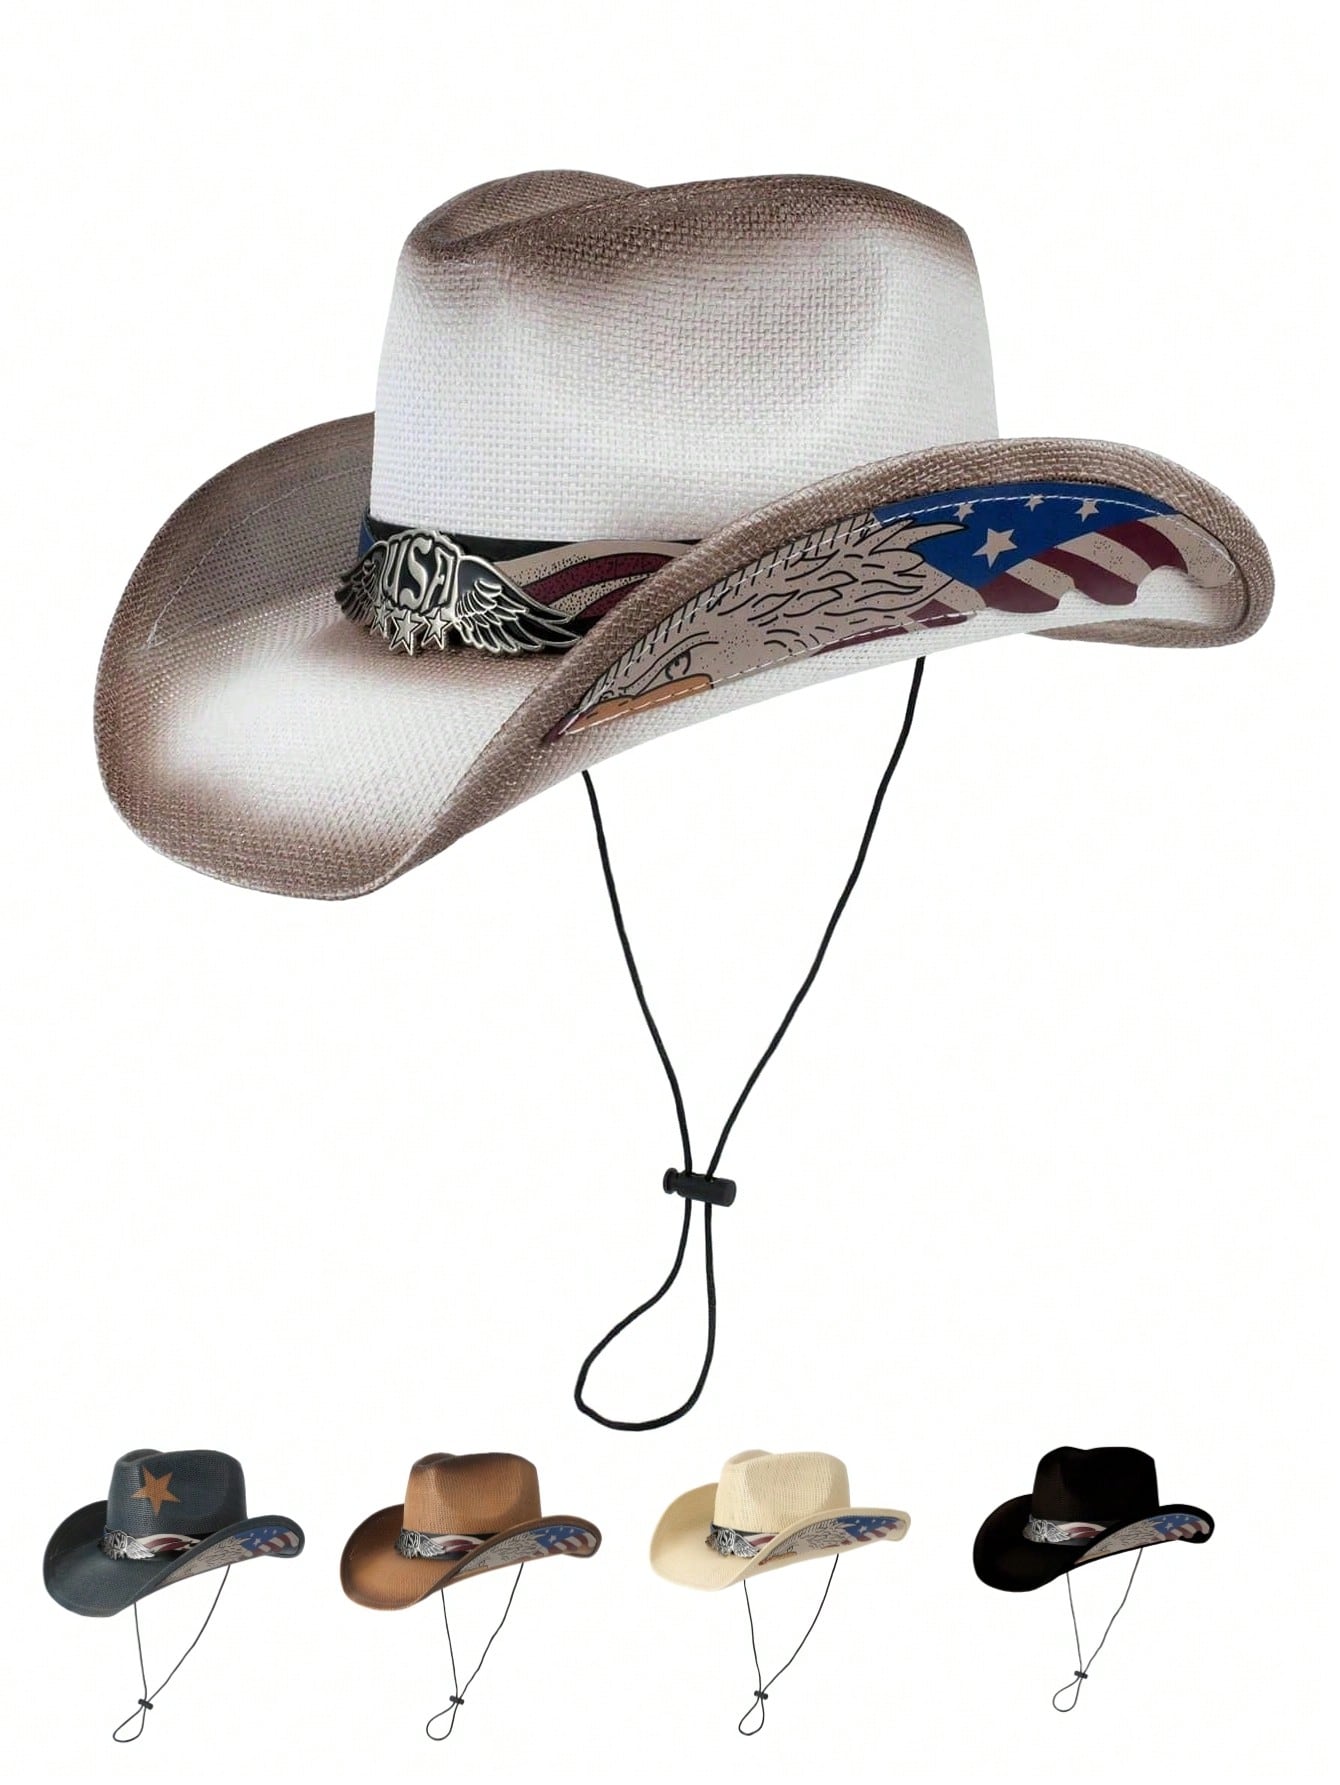 1шт Ковбойская шляпа в стиле вестерн с большими полями и лоскутным дизайном, многоцветный тиара в западном стиле шапка cowgirl для женщин и девушек розовая тиара ковбойская шапка праздничный костюм шляпа для вечеринки